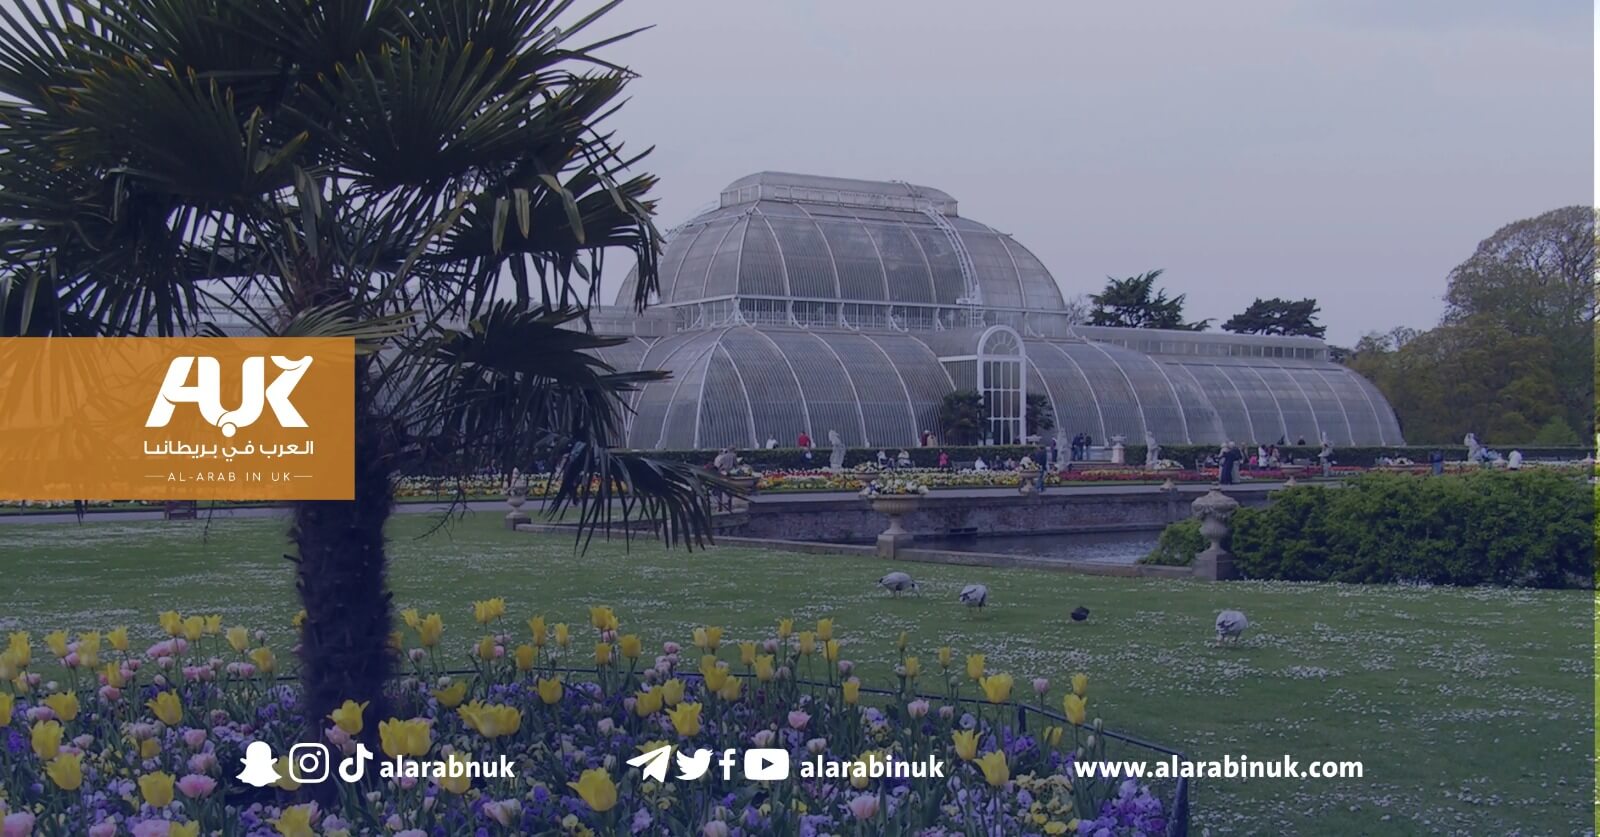 حدائق كيو الشهيرة في لندن تستضيف معرض فني لتصاميم نباتية من وحي التراث الإسلامي